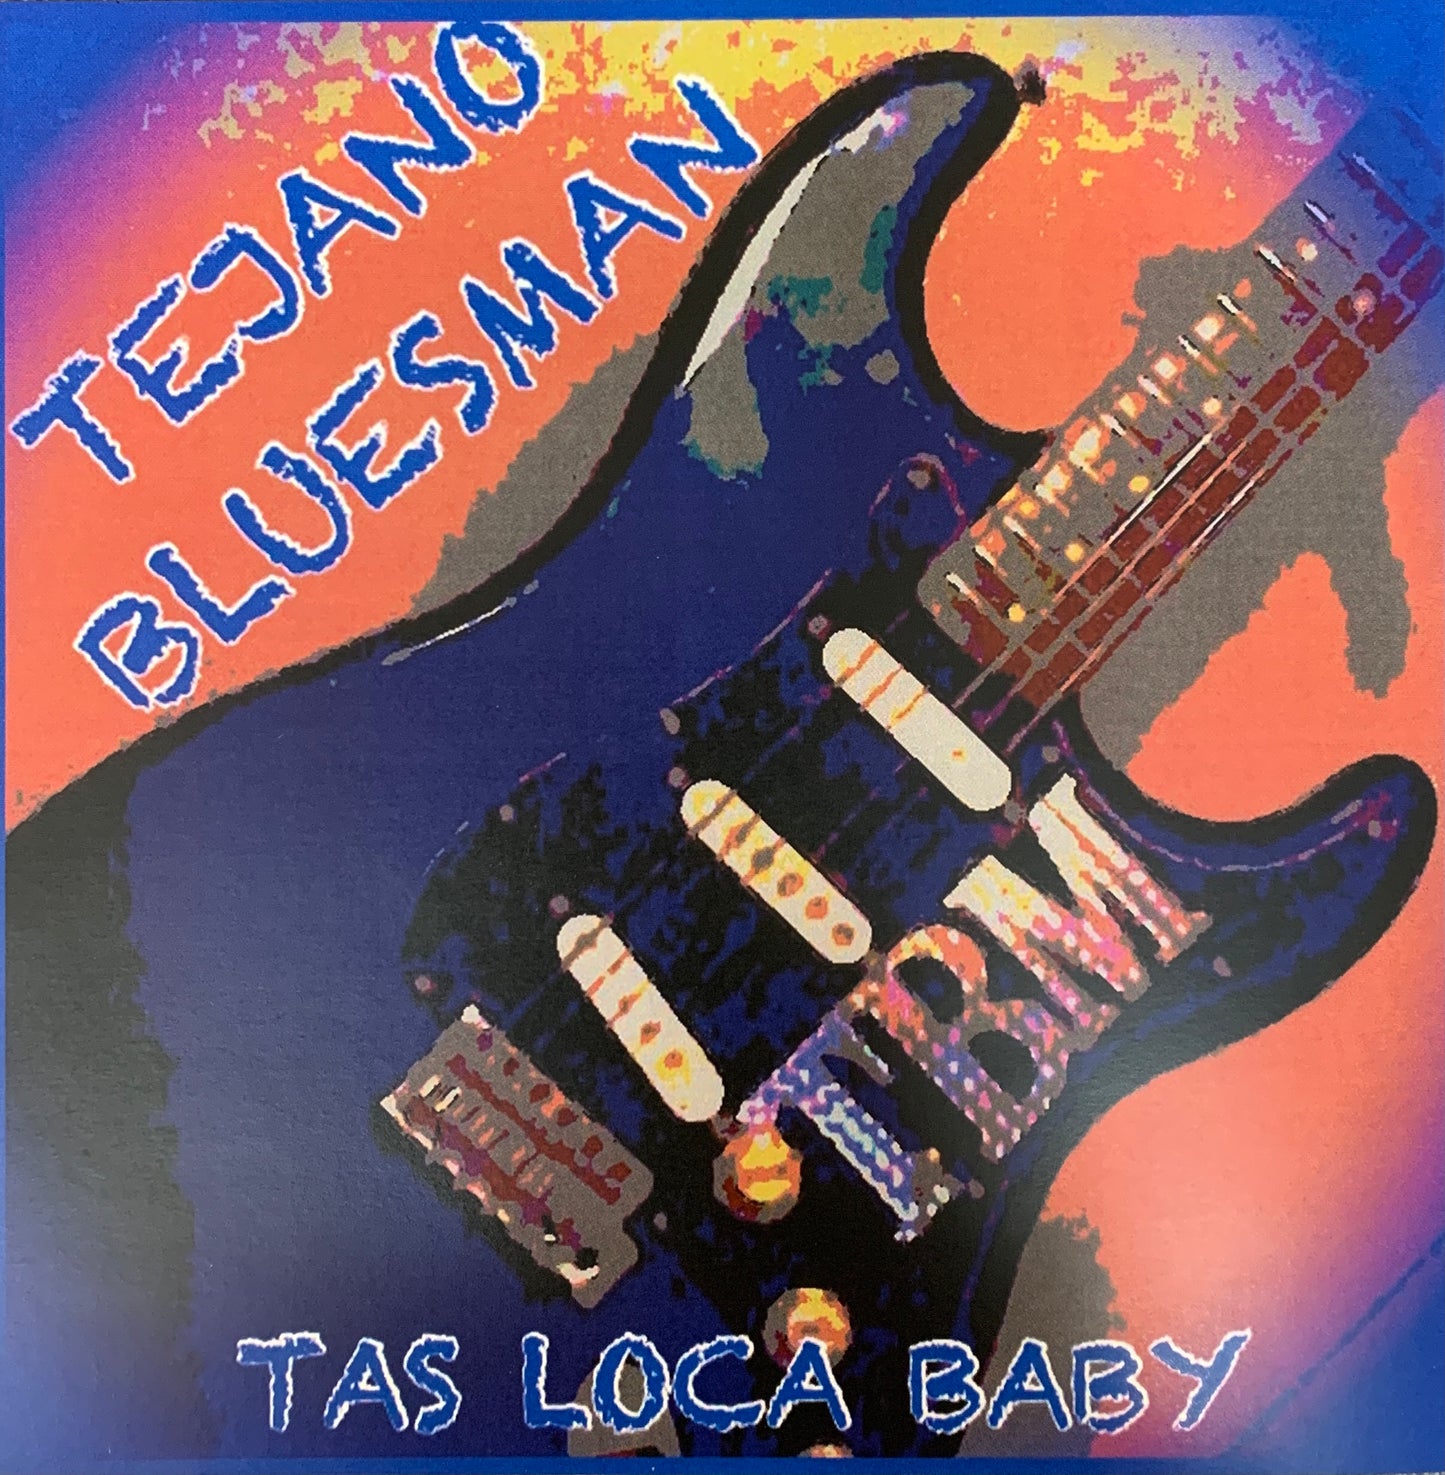 Tejano Bluesman - Tas Loca Baby (CD)